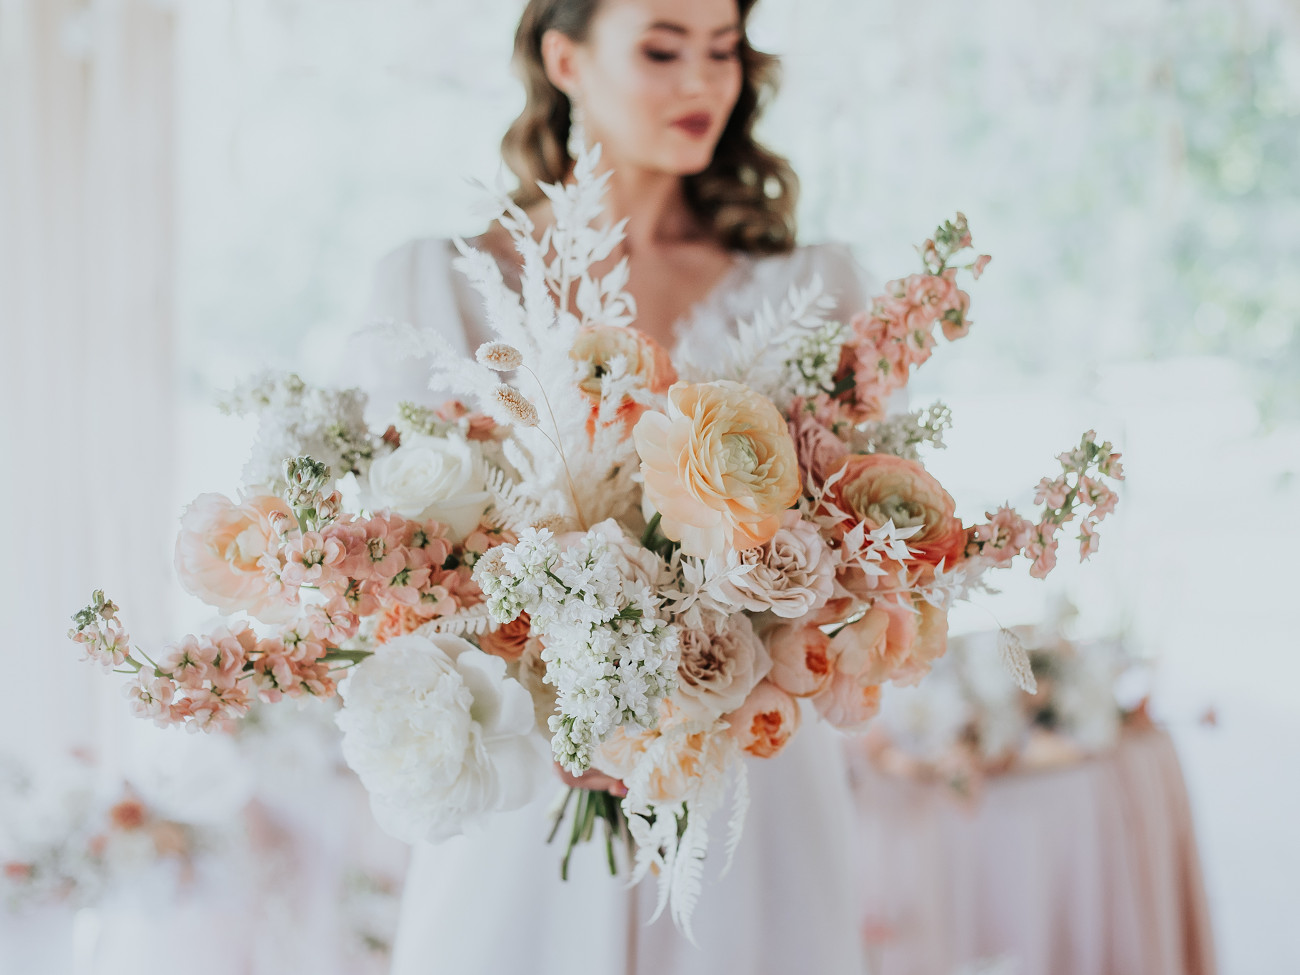 Delikatny, romantyczny ślub w bieli i brzoskwiniowych odcieniach różu